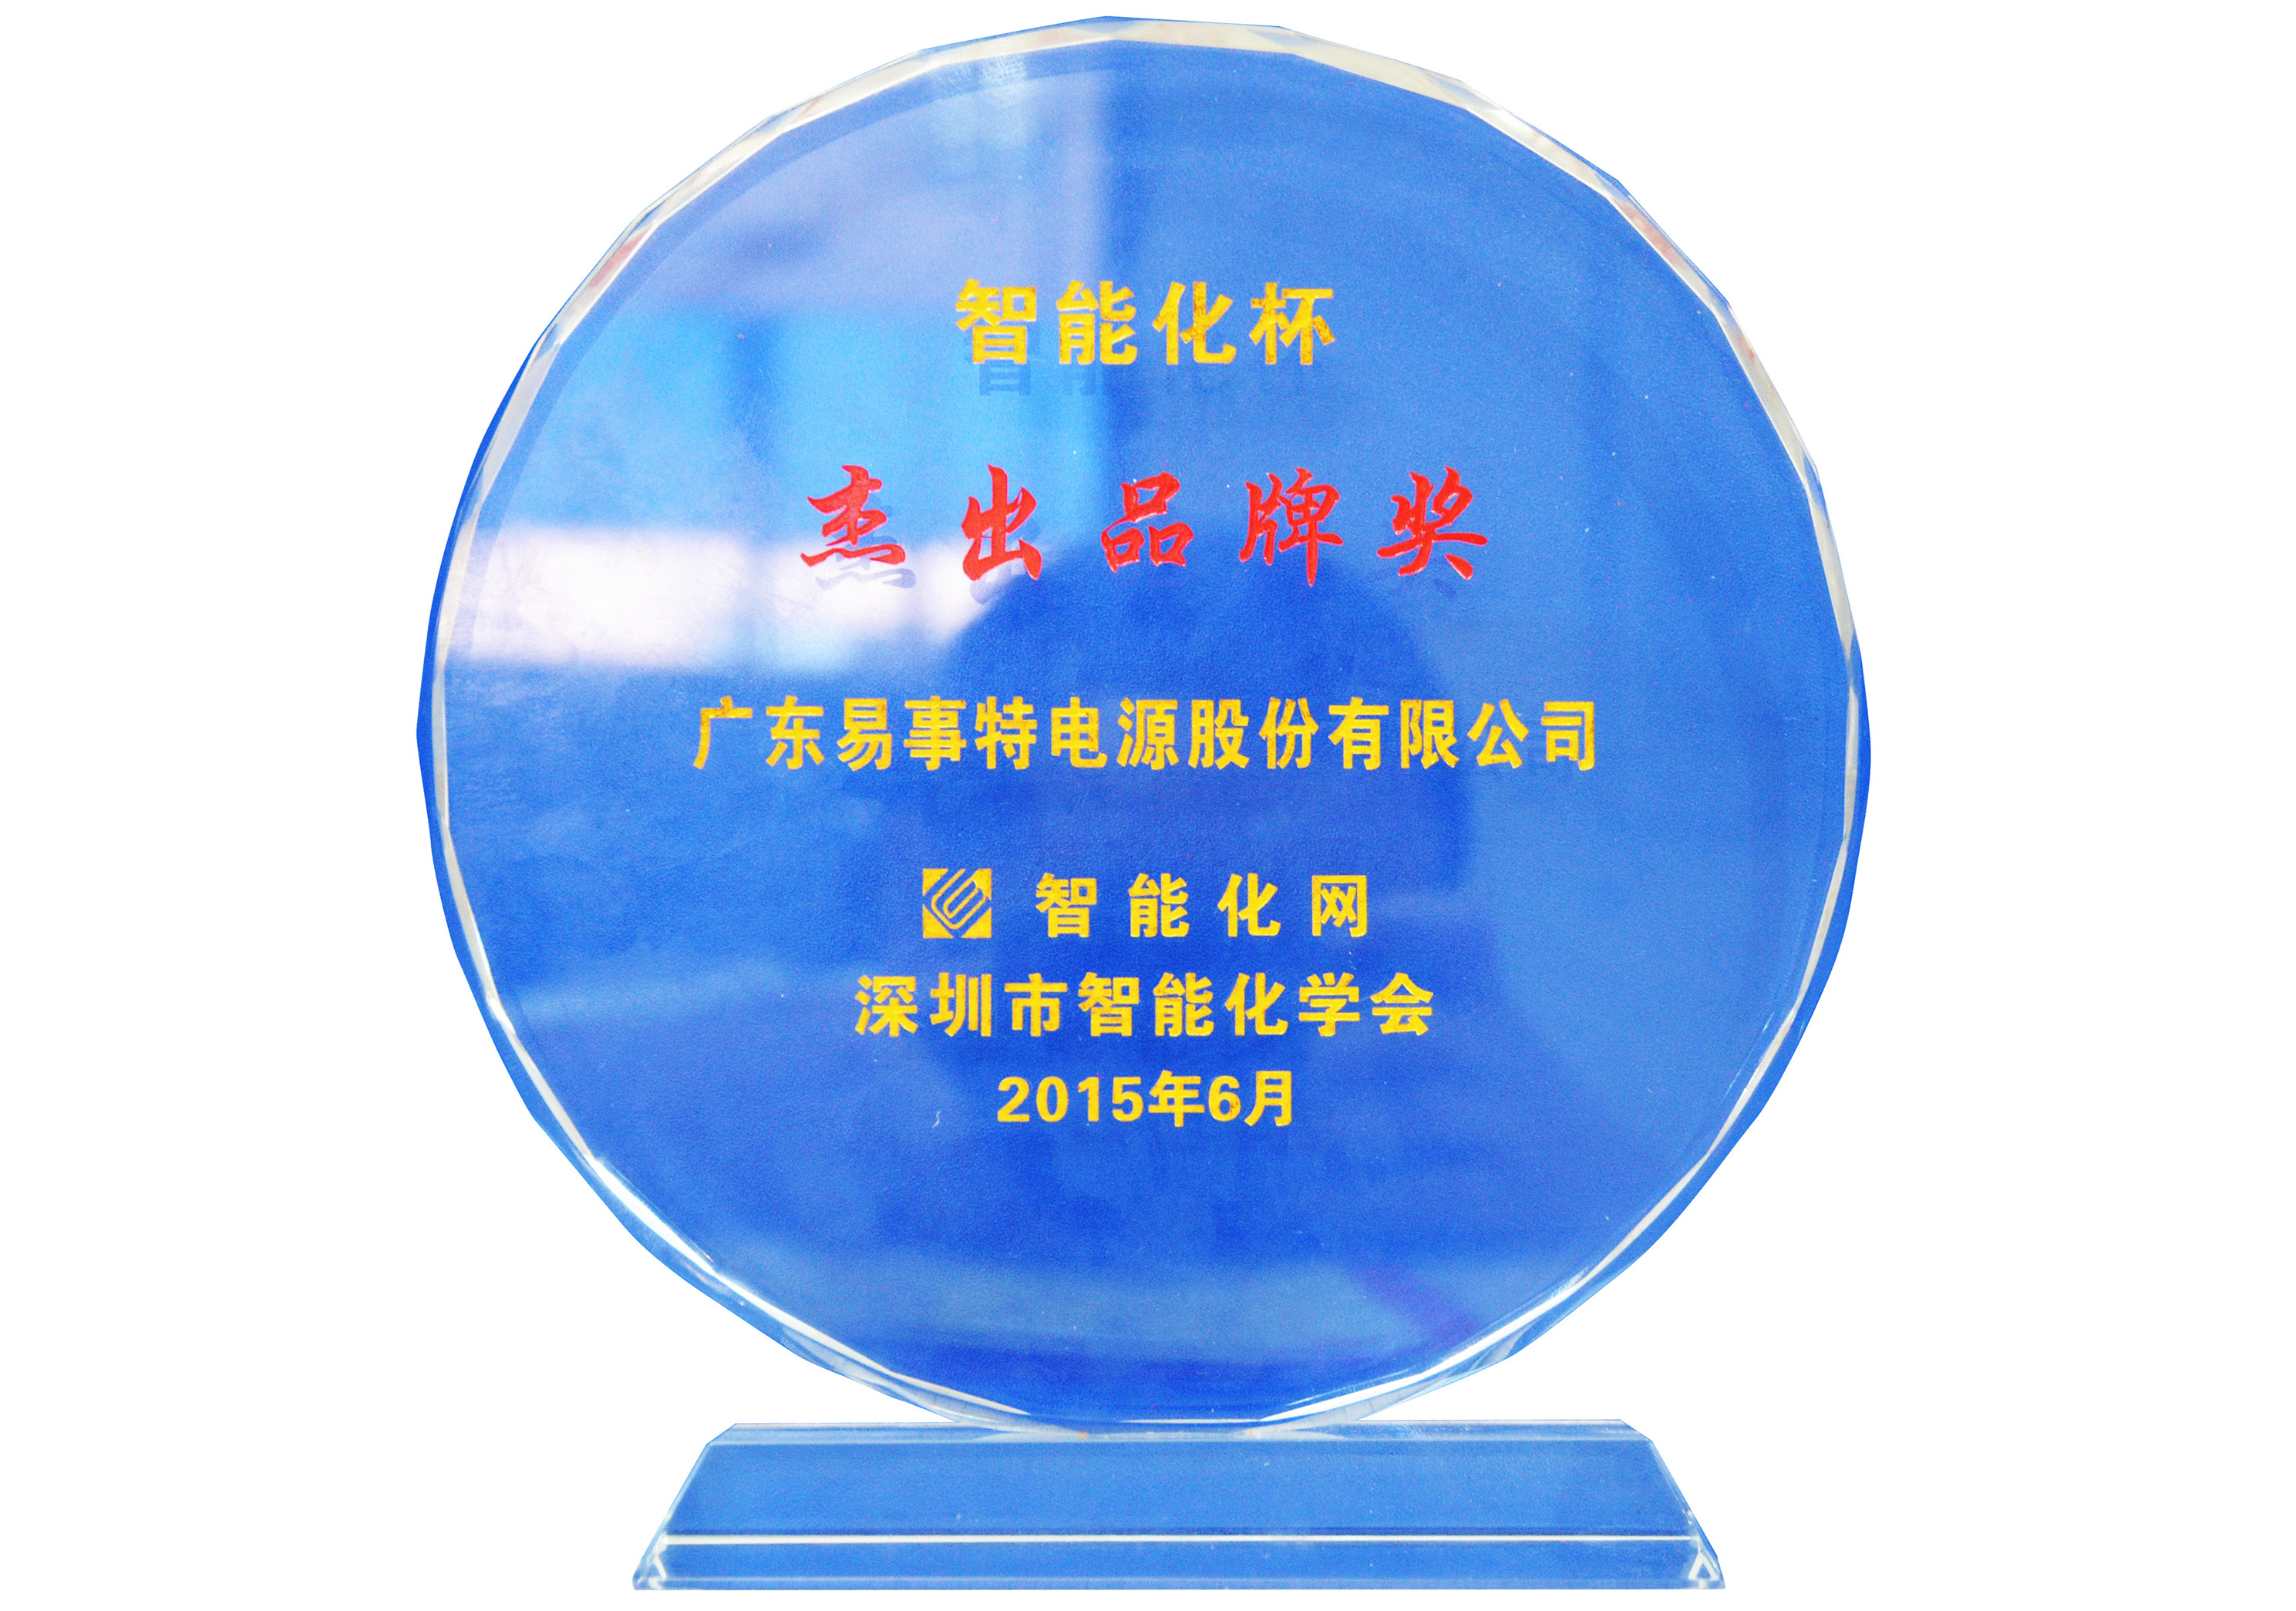 2015年度智能化杯“杰出品牌奖”